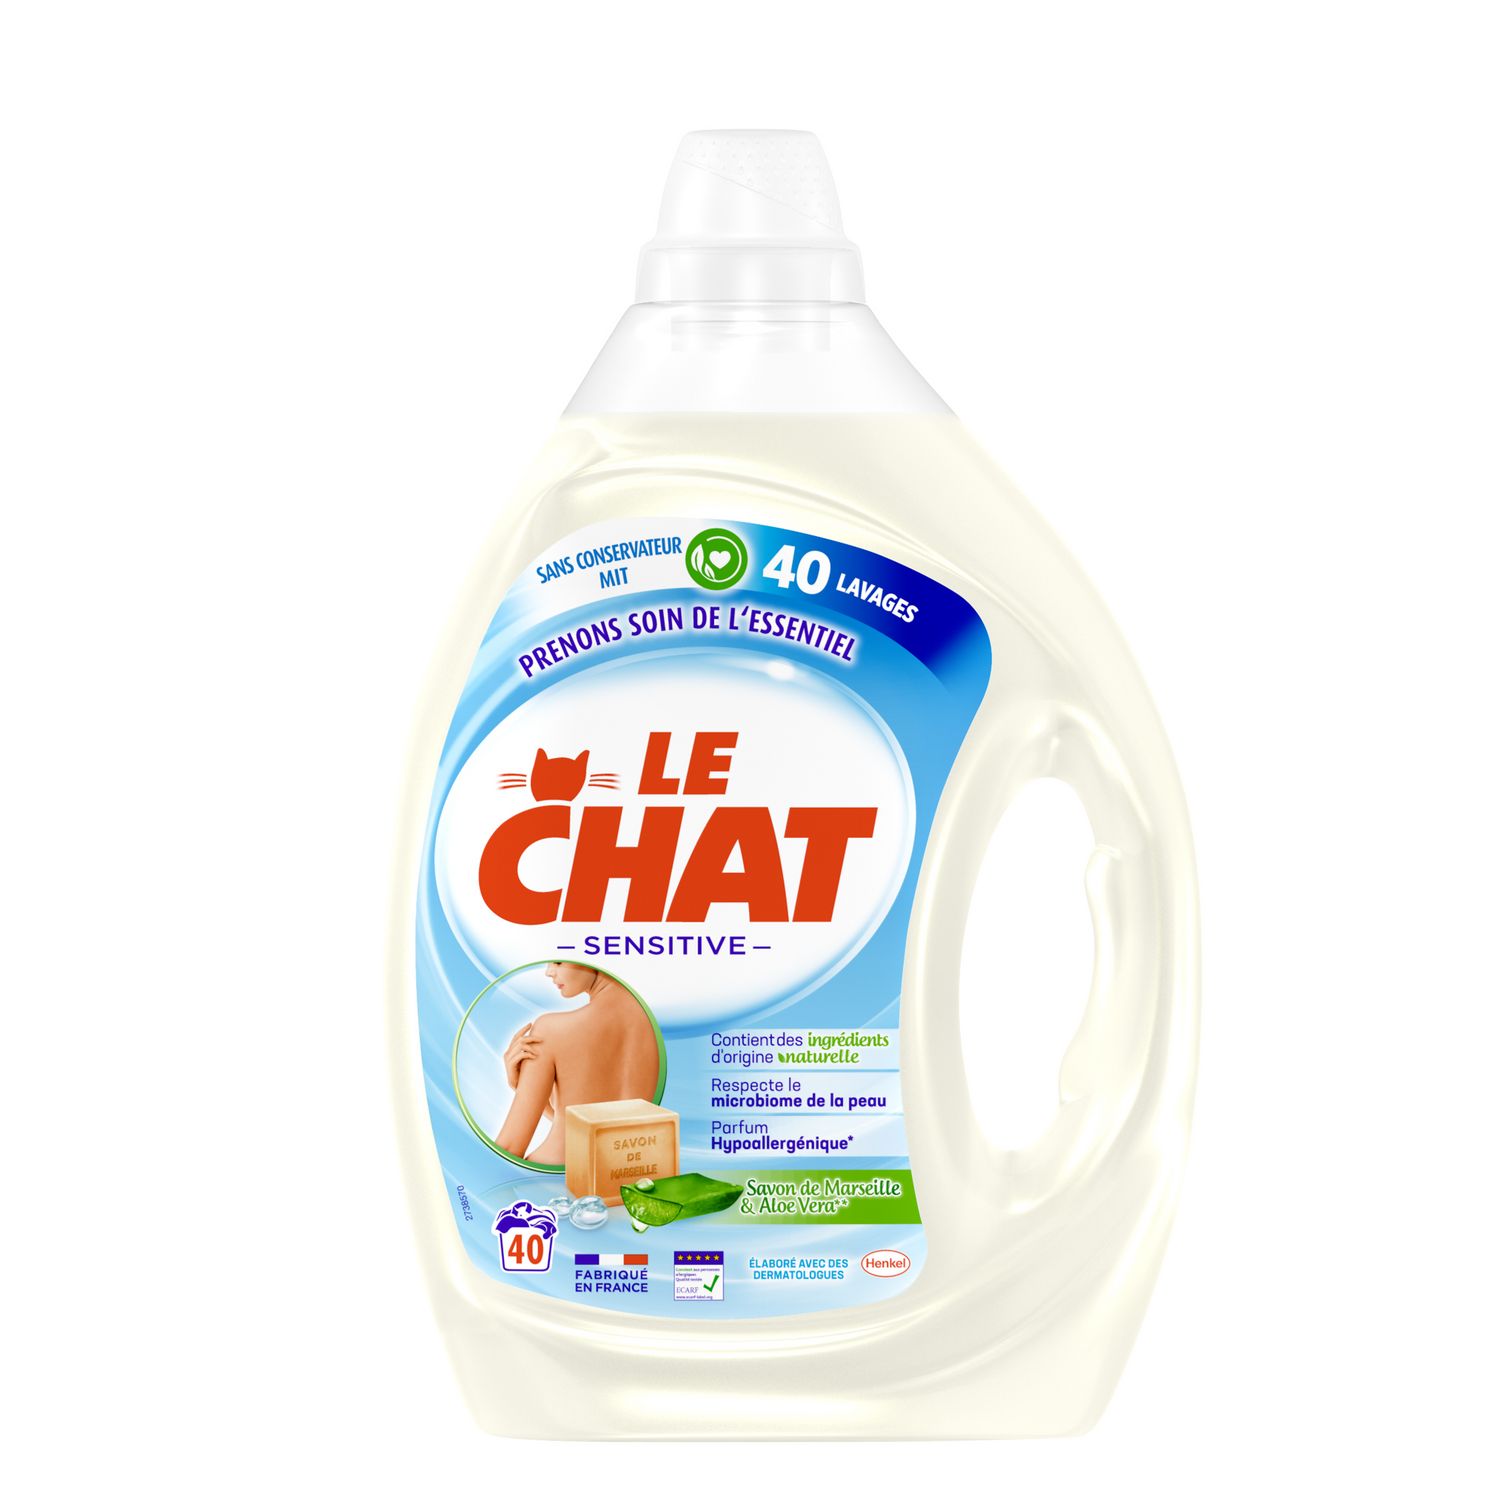 LE CHAT Lessive liquide color 33d